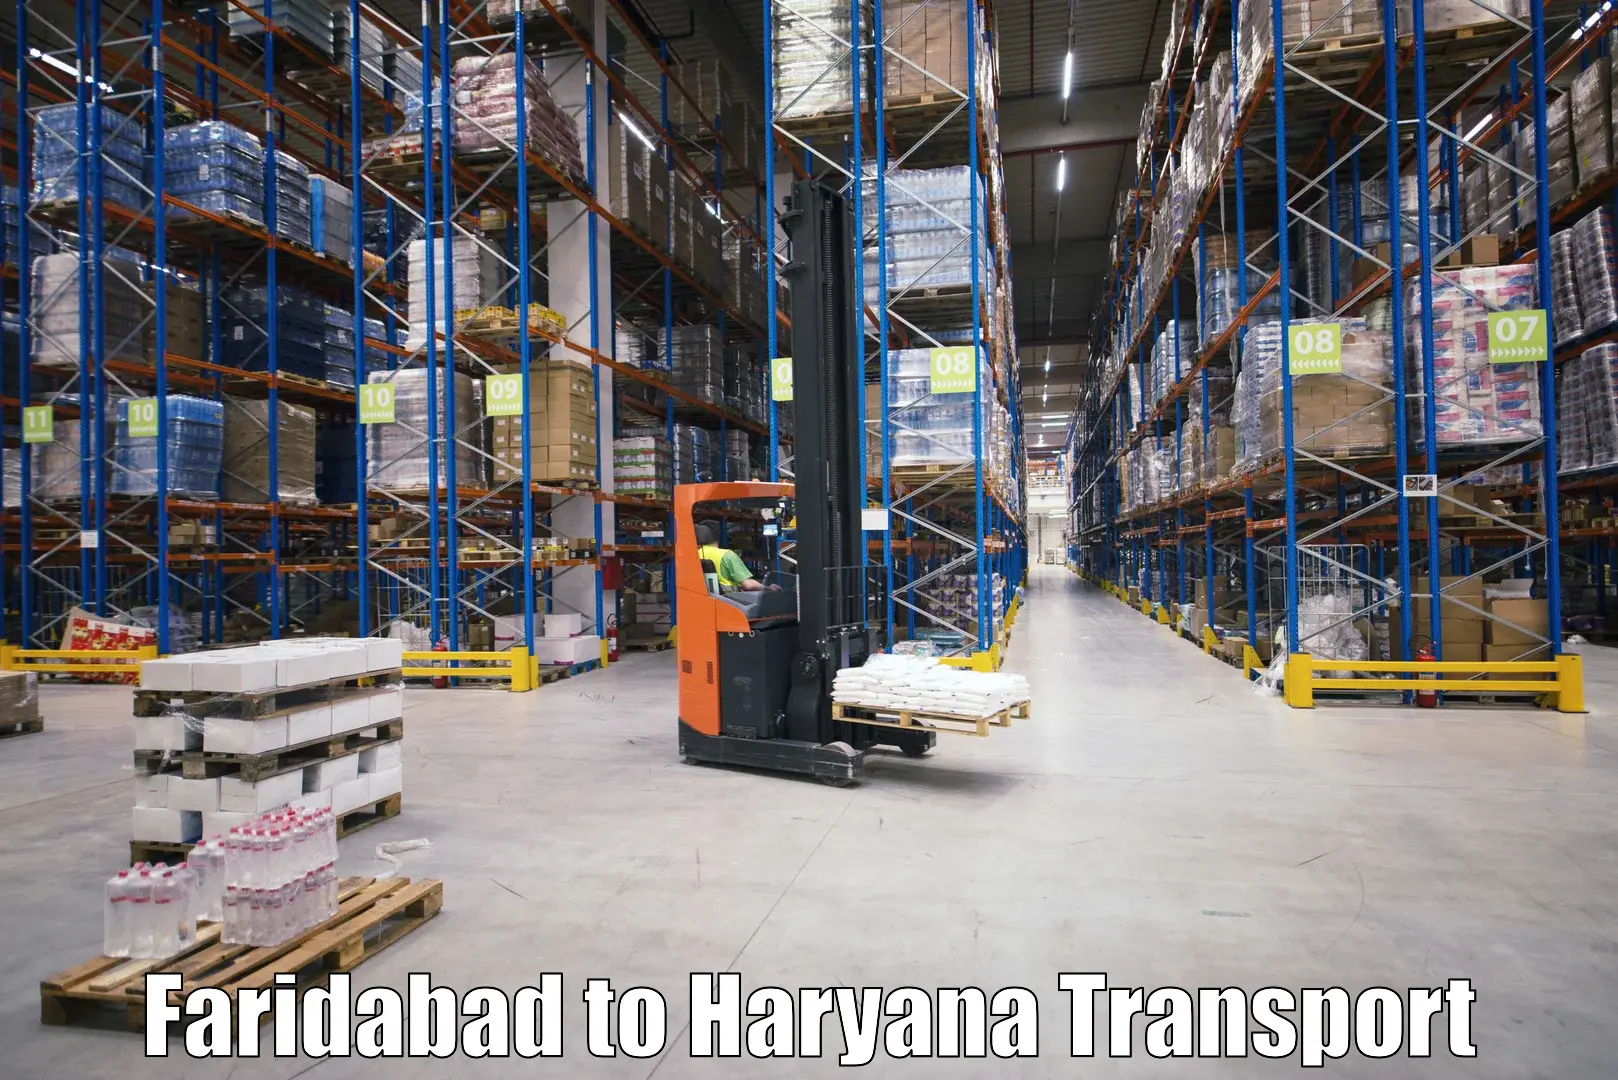 Online transport service Faridabad to Mahendragarh